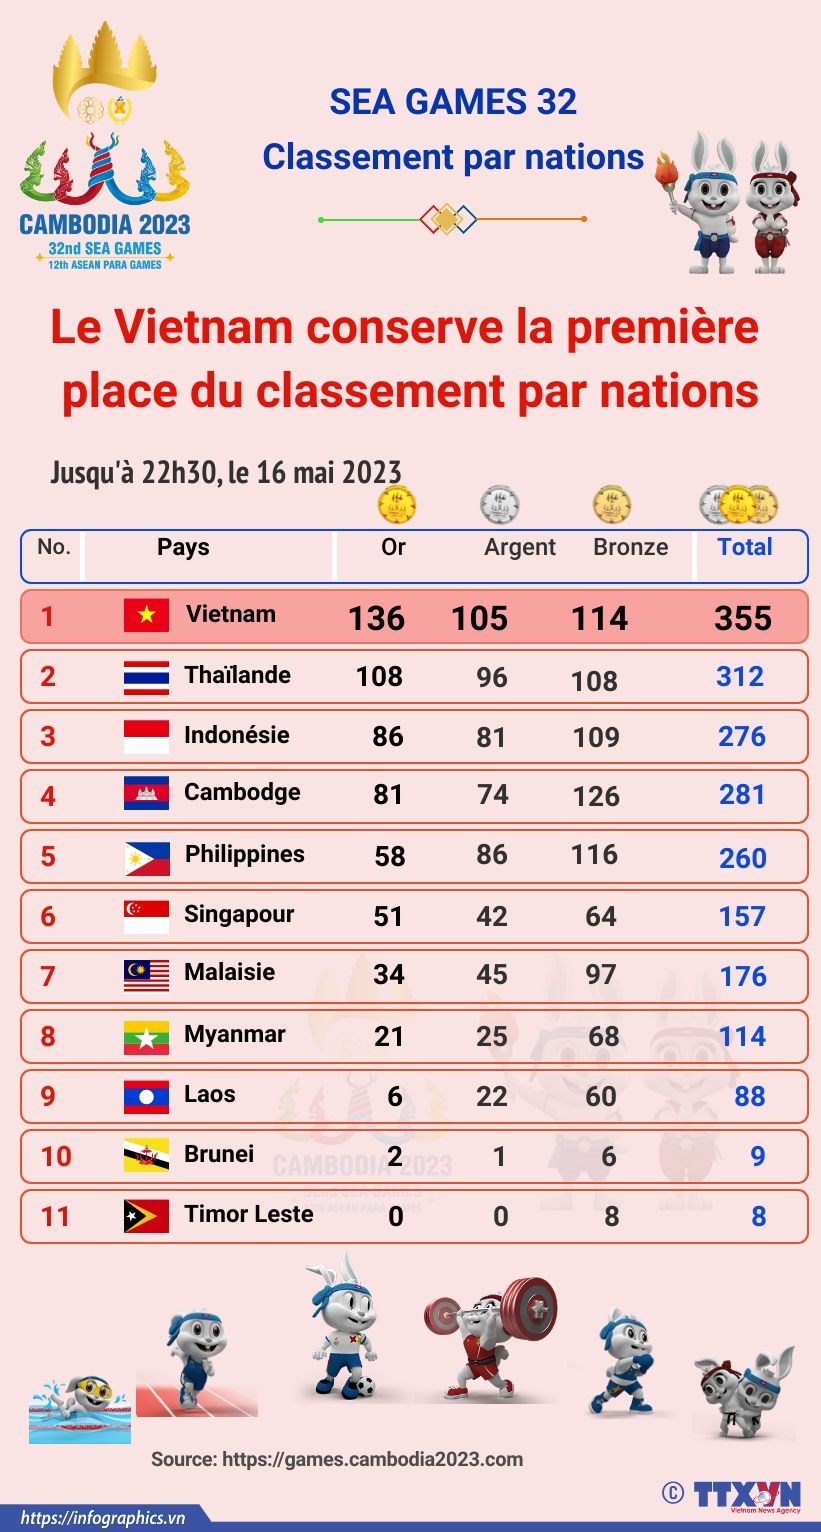 Le Vietnam conserve sa premiere place du classement par nations hinh anh 1